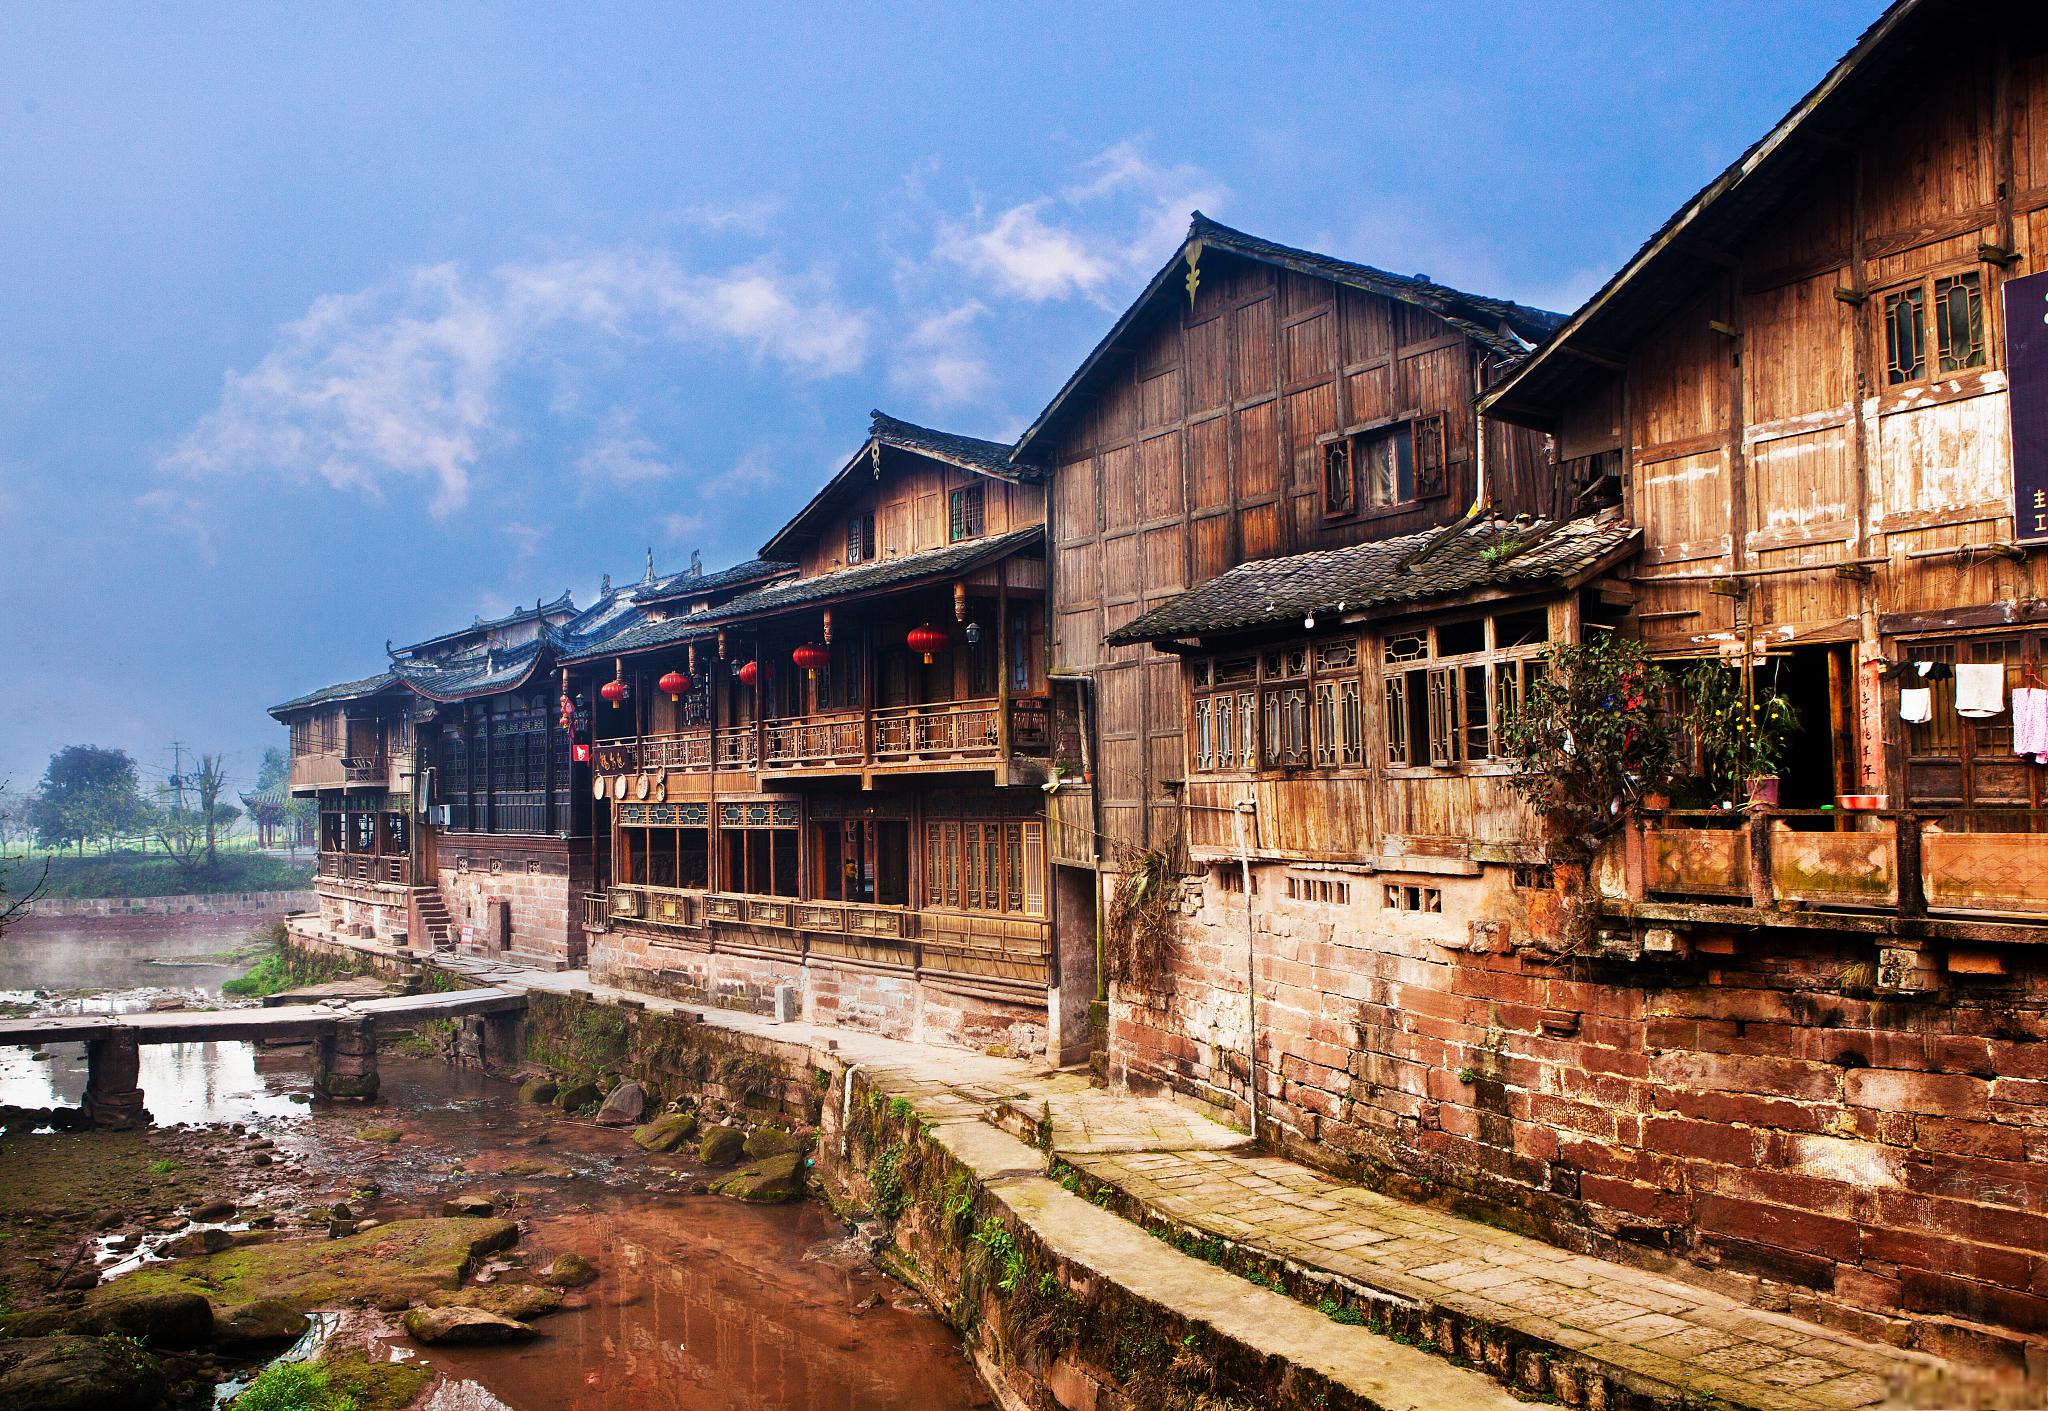 青木川古镇,位于陕西省汉中市宁强县,是一个充满历史韵味和文化底蕴的